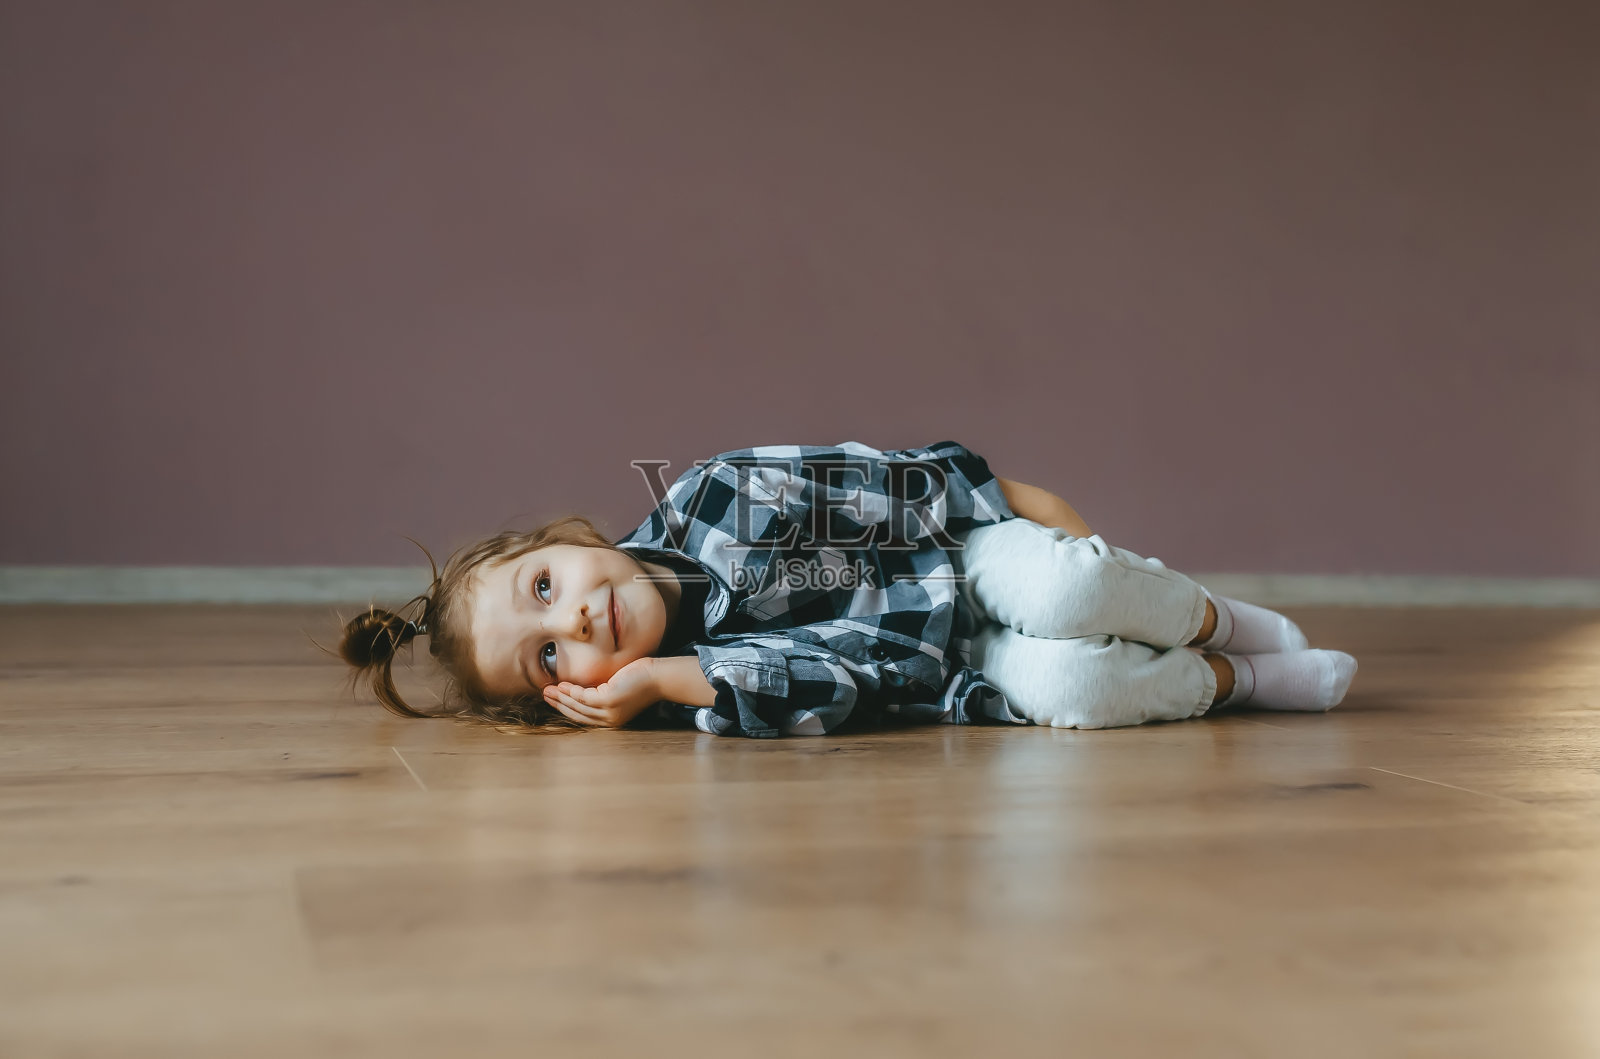 一个可爱的小女孩躺在室内地板上的滑稽肖像照片摄影图片